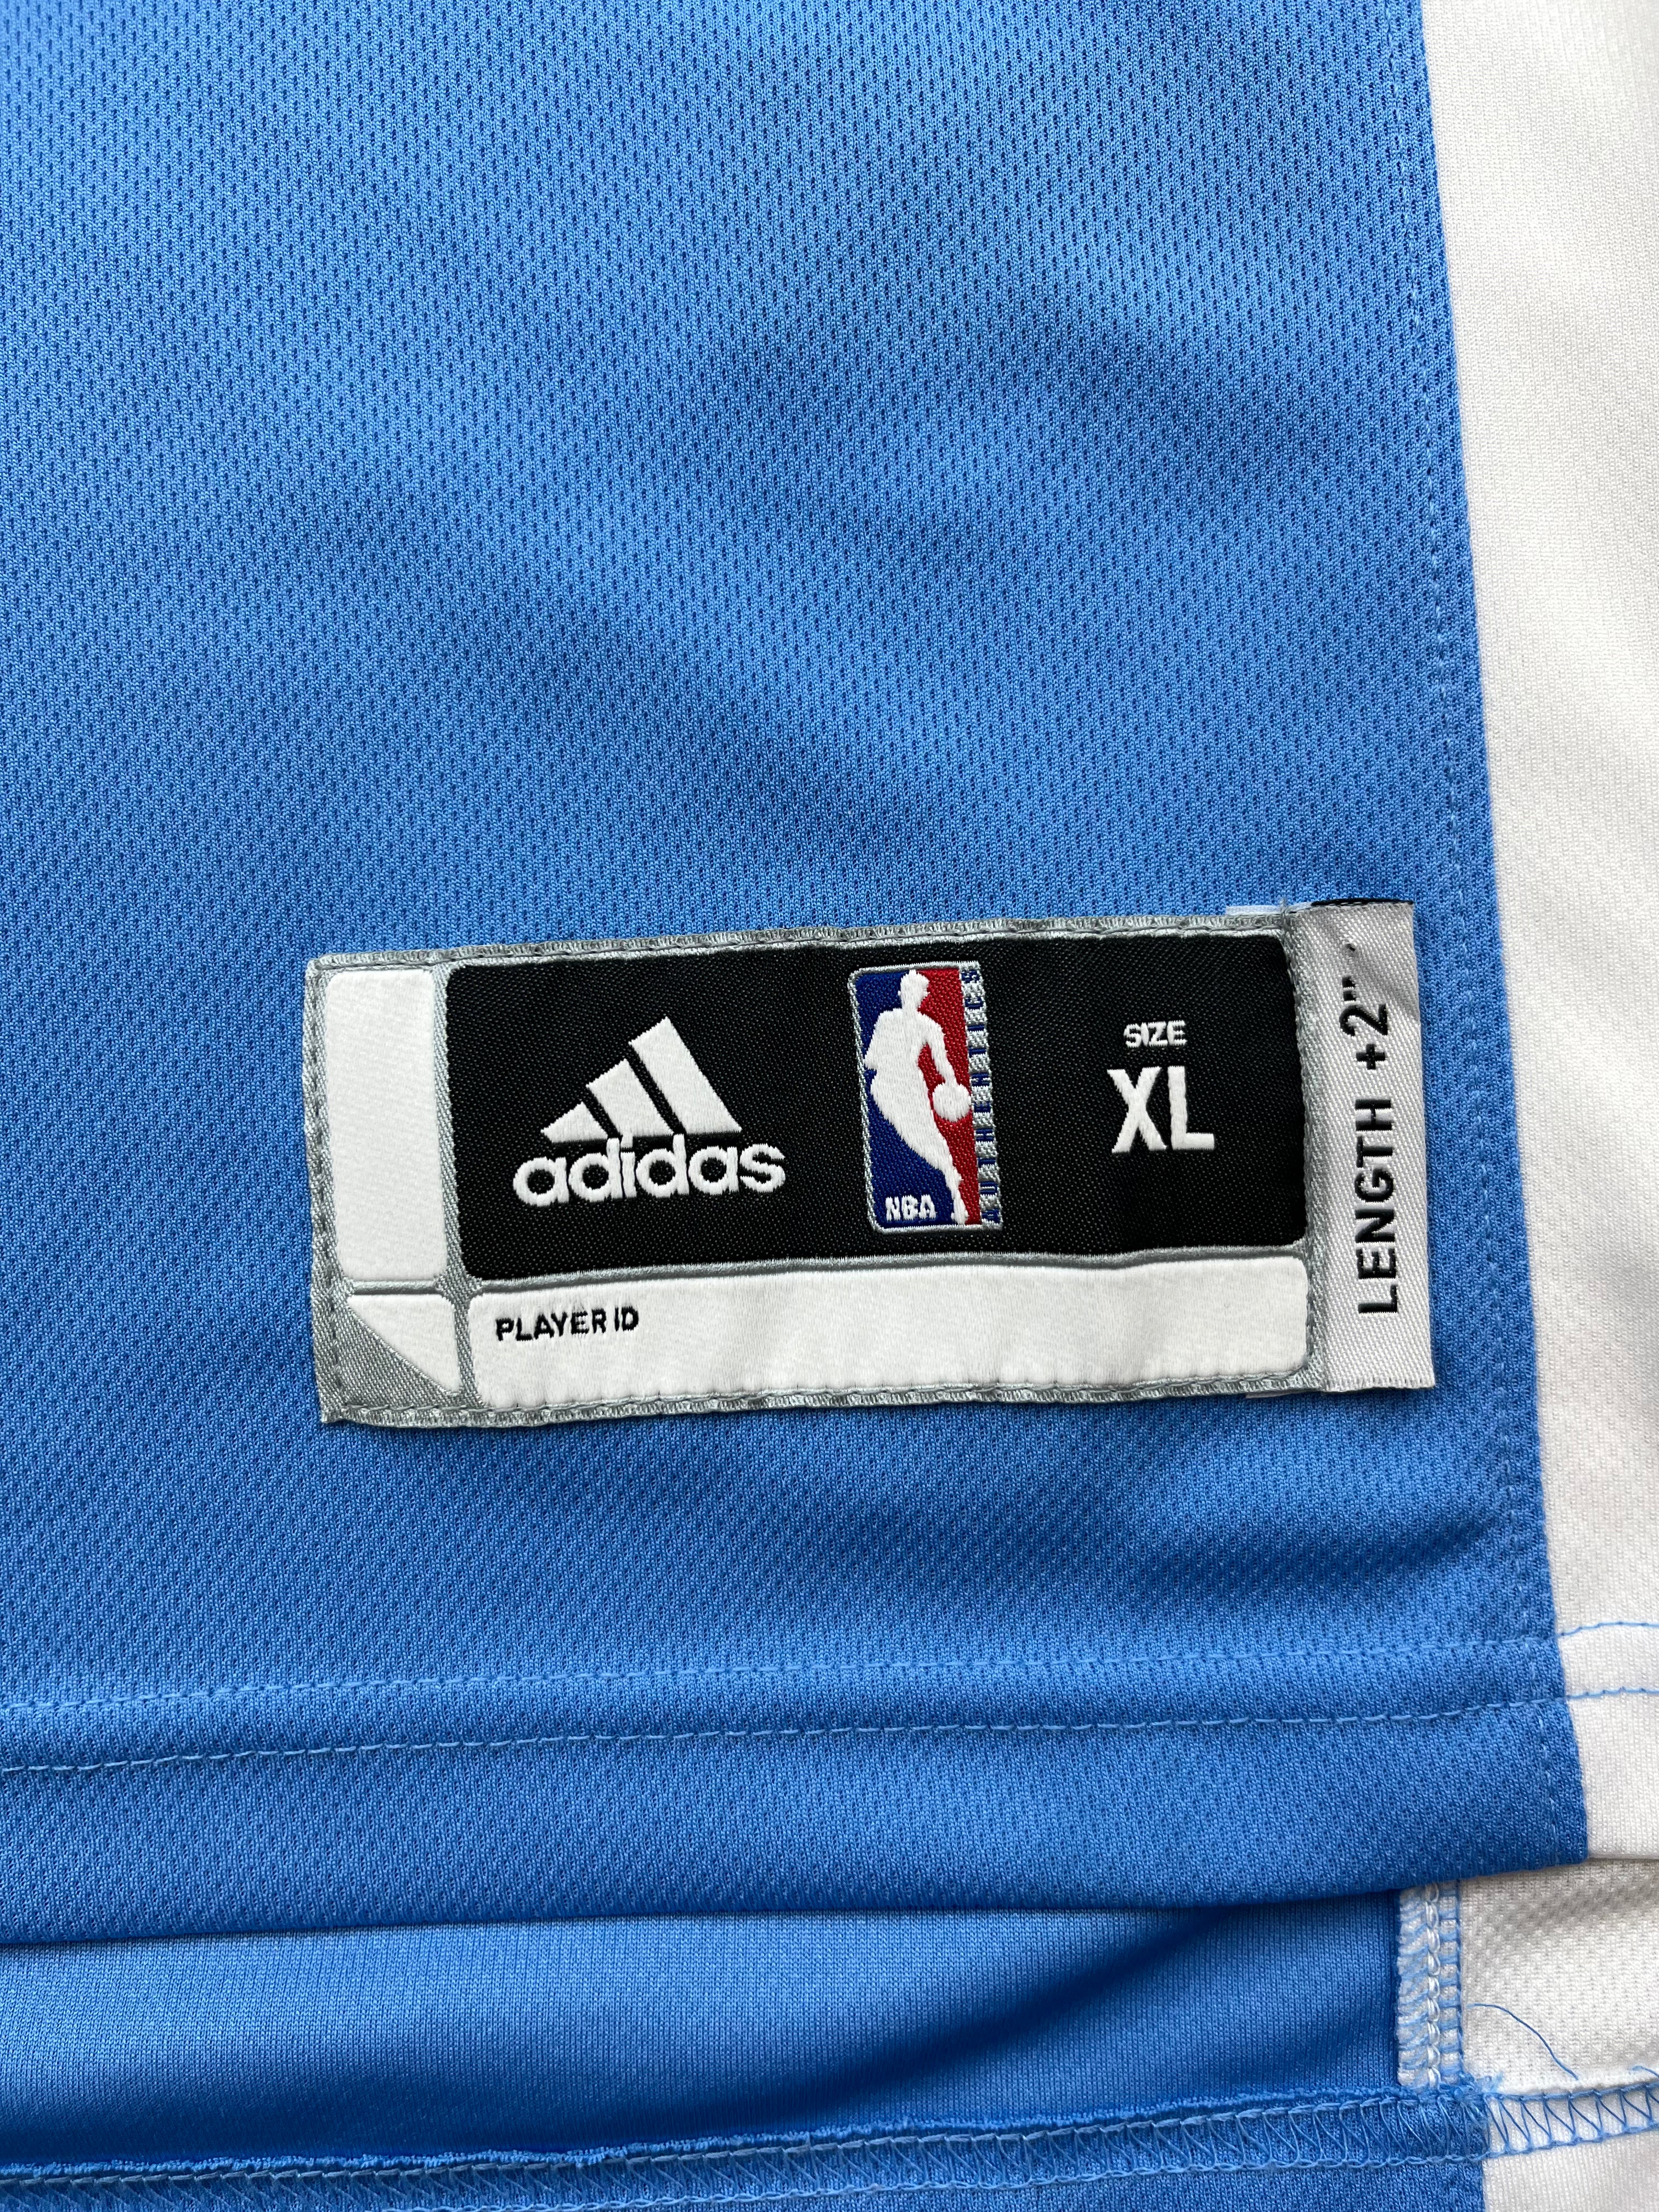 2011-14 Denver Nuggets Adidas Road Jersey Gallinari #8 (XL) 9/10